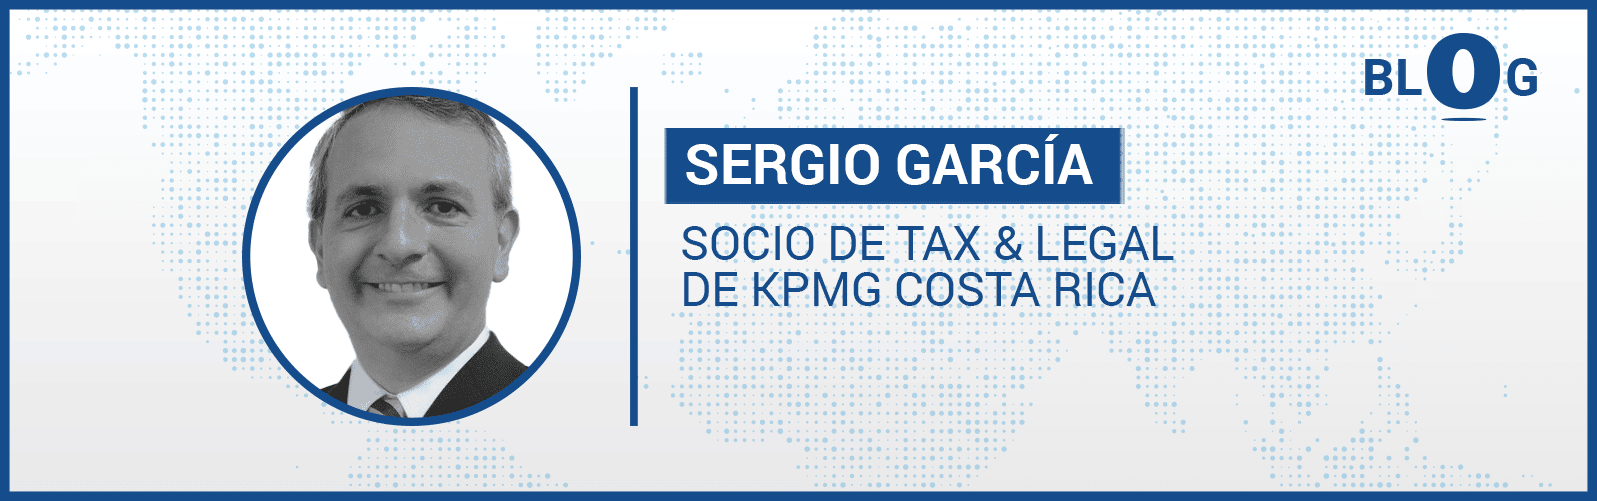 Sergio Garcia impuestos